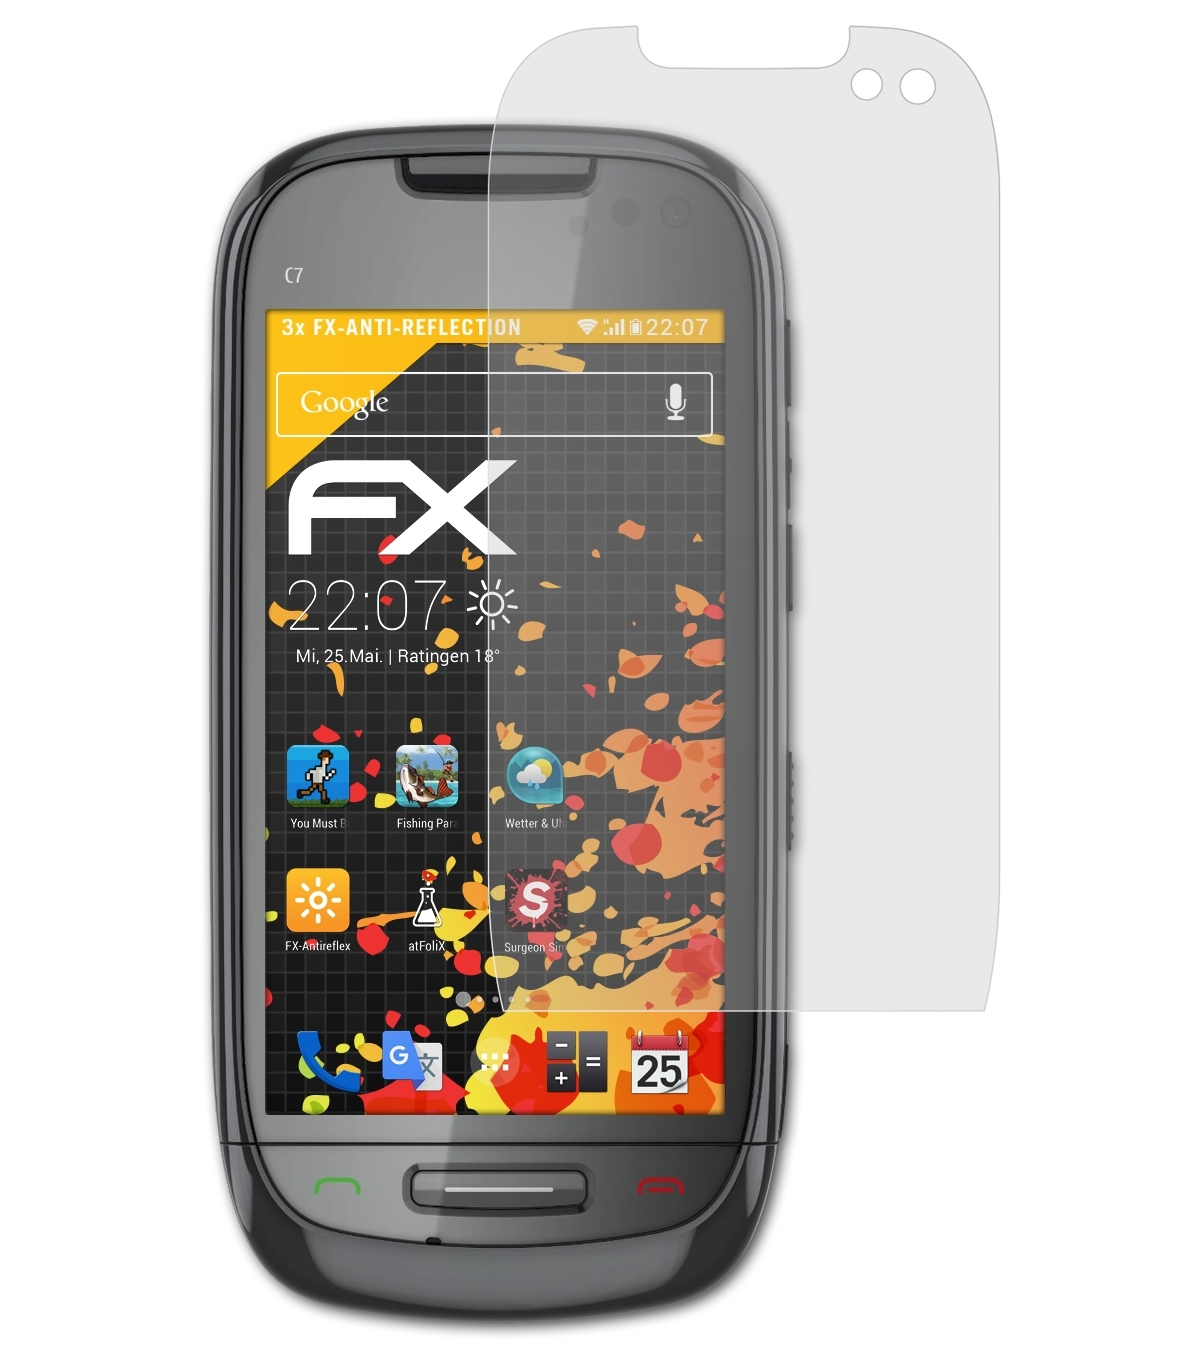 Displayschutz(für ATFOLIX C7-00 3x FX-Antireflex (Astound)) Nokia